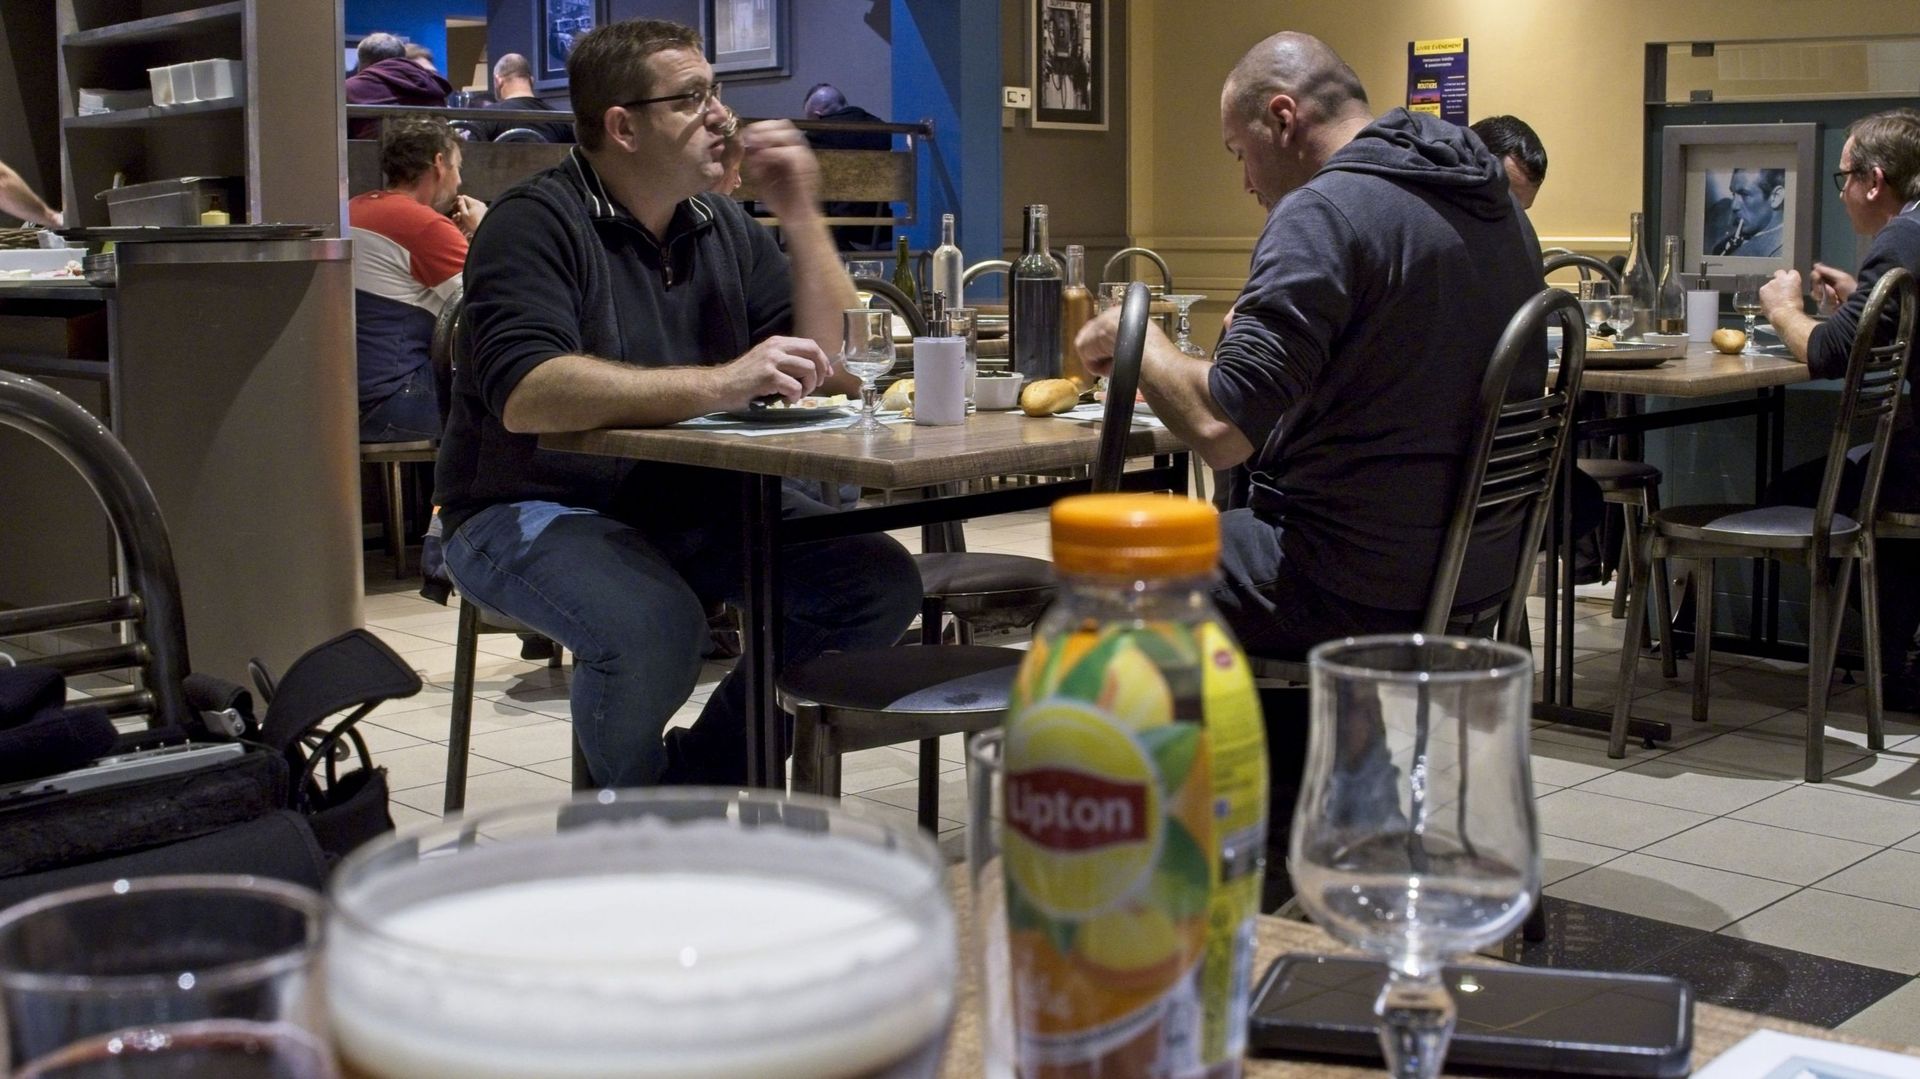 deconfinement-une-etude-americaine-preconise-de-restreindre-l-occupation-dans-les-restaurants-les-bars-et-les-salles-de-fitness